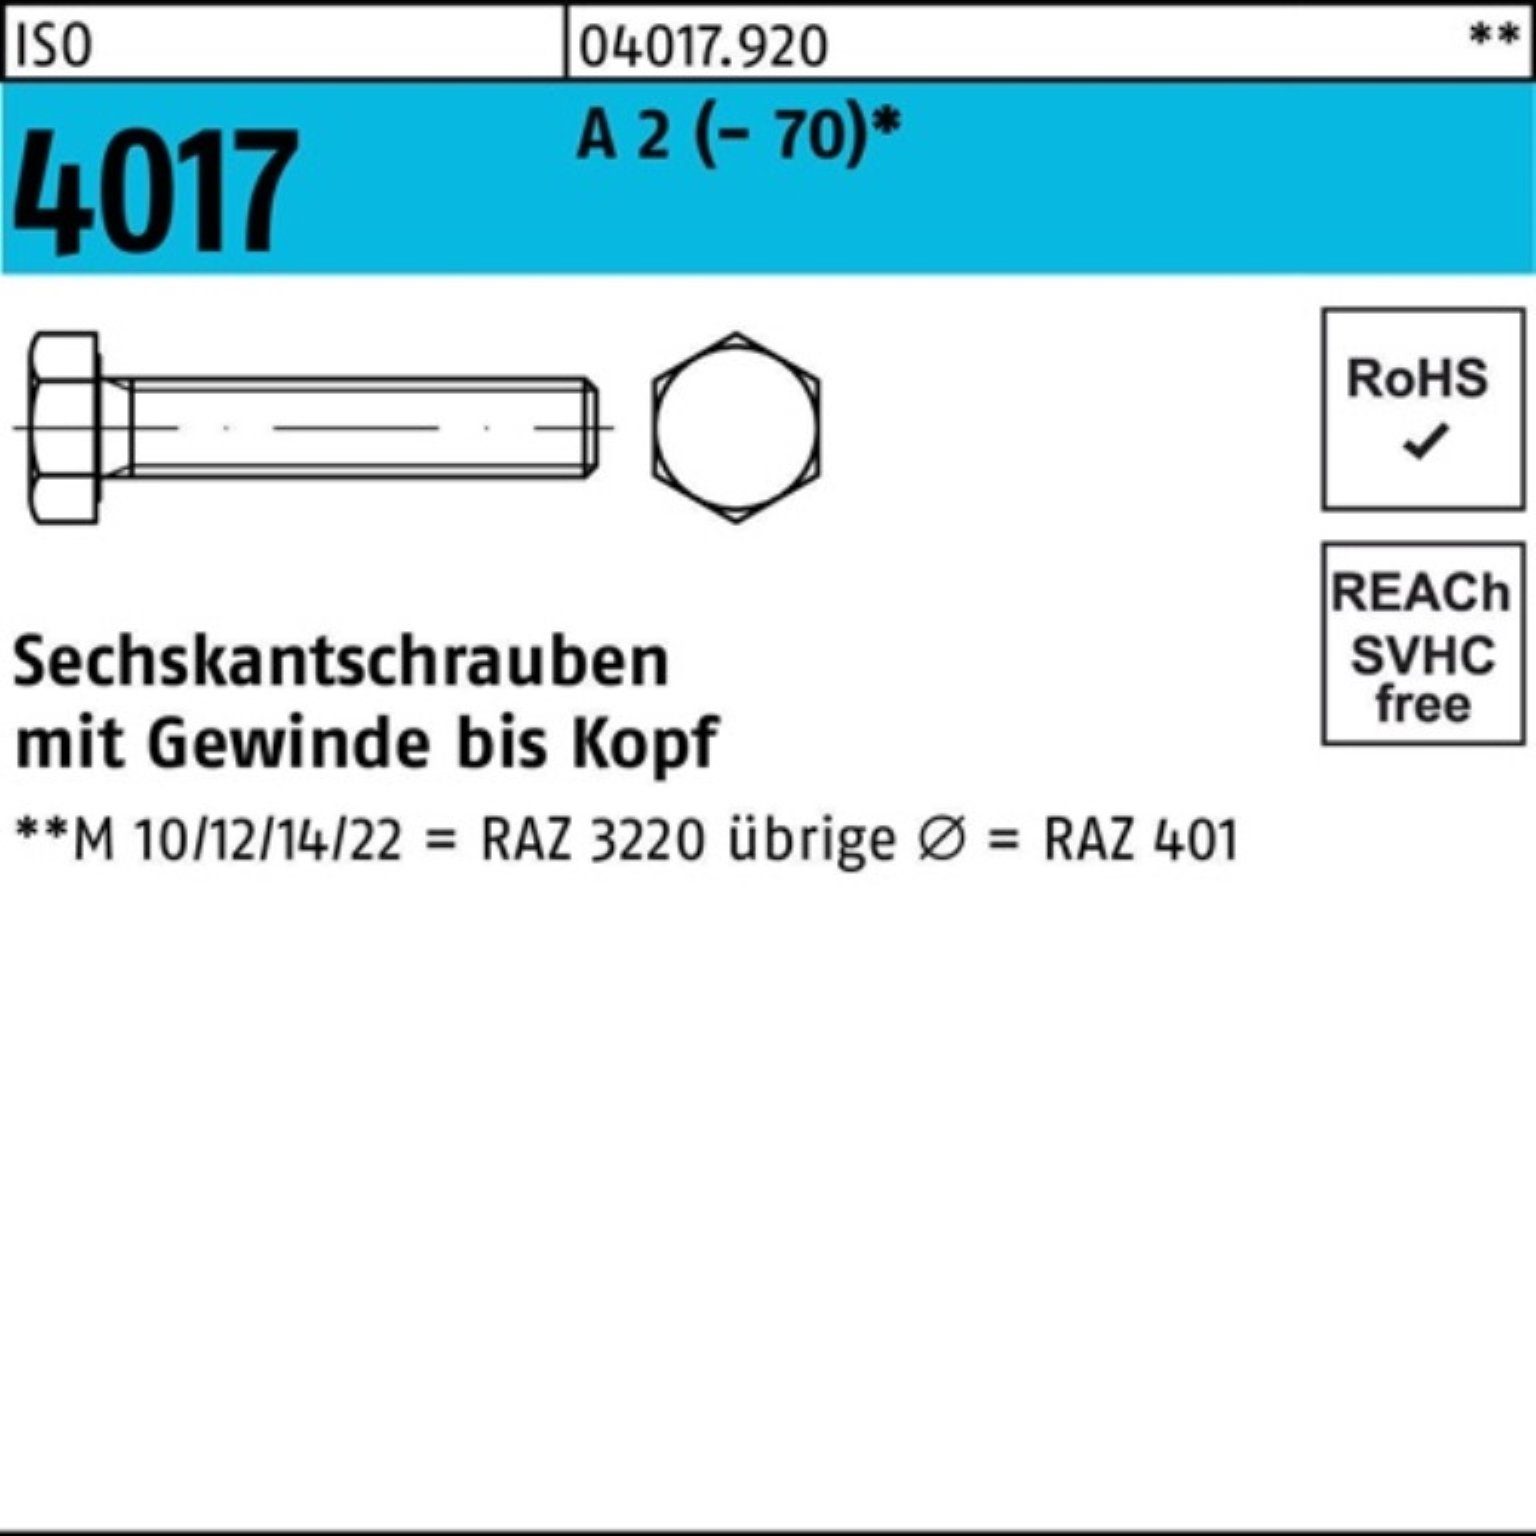 Bufab Sechskantschraube 100er Pack Sechskantschraube ISO 4017 VG M22x 80 A 2 (70) 1 Stück I